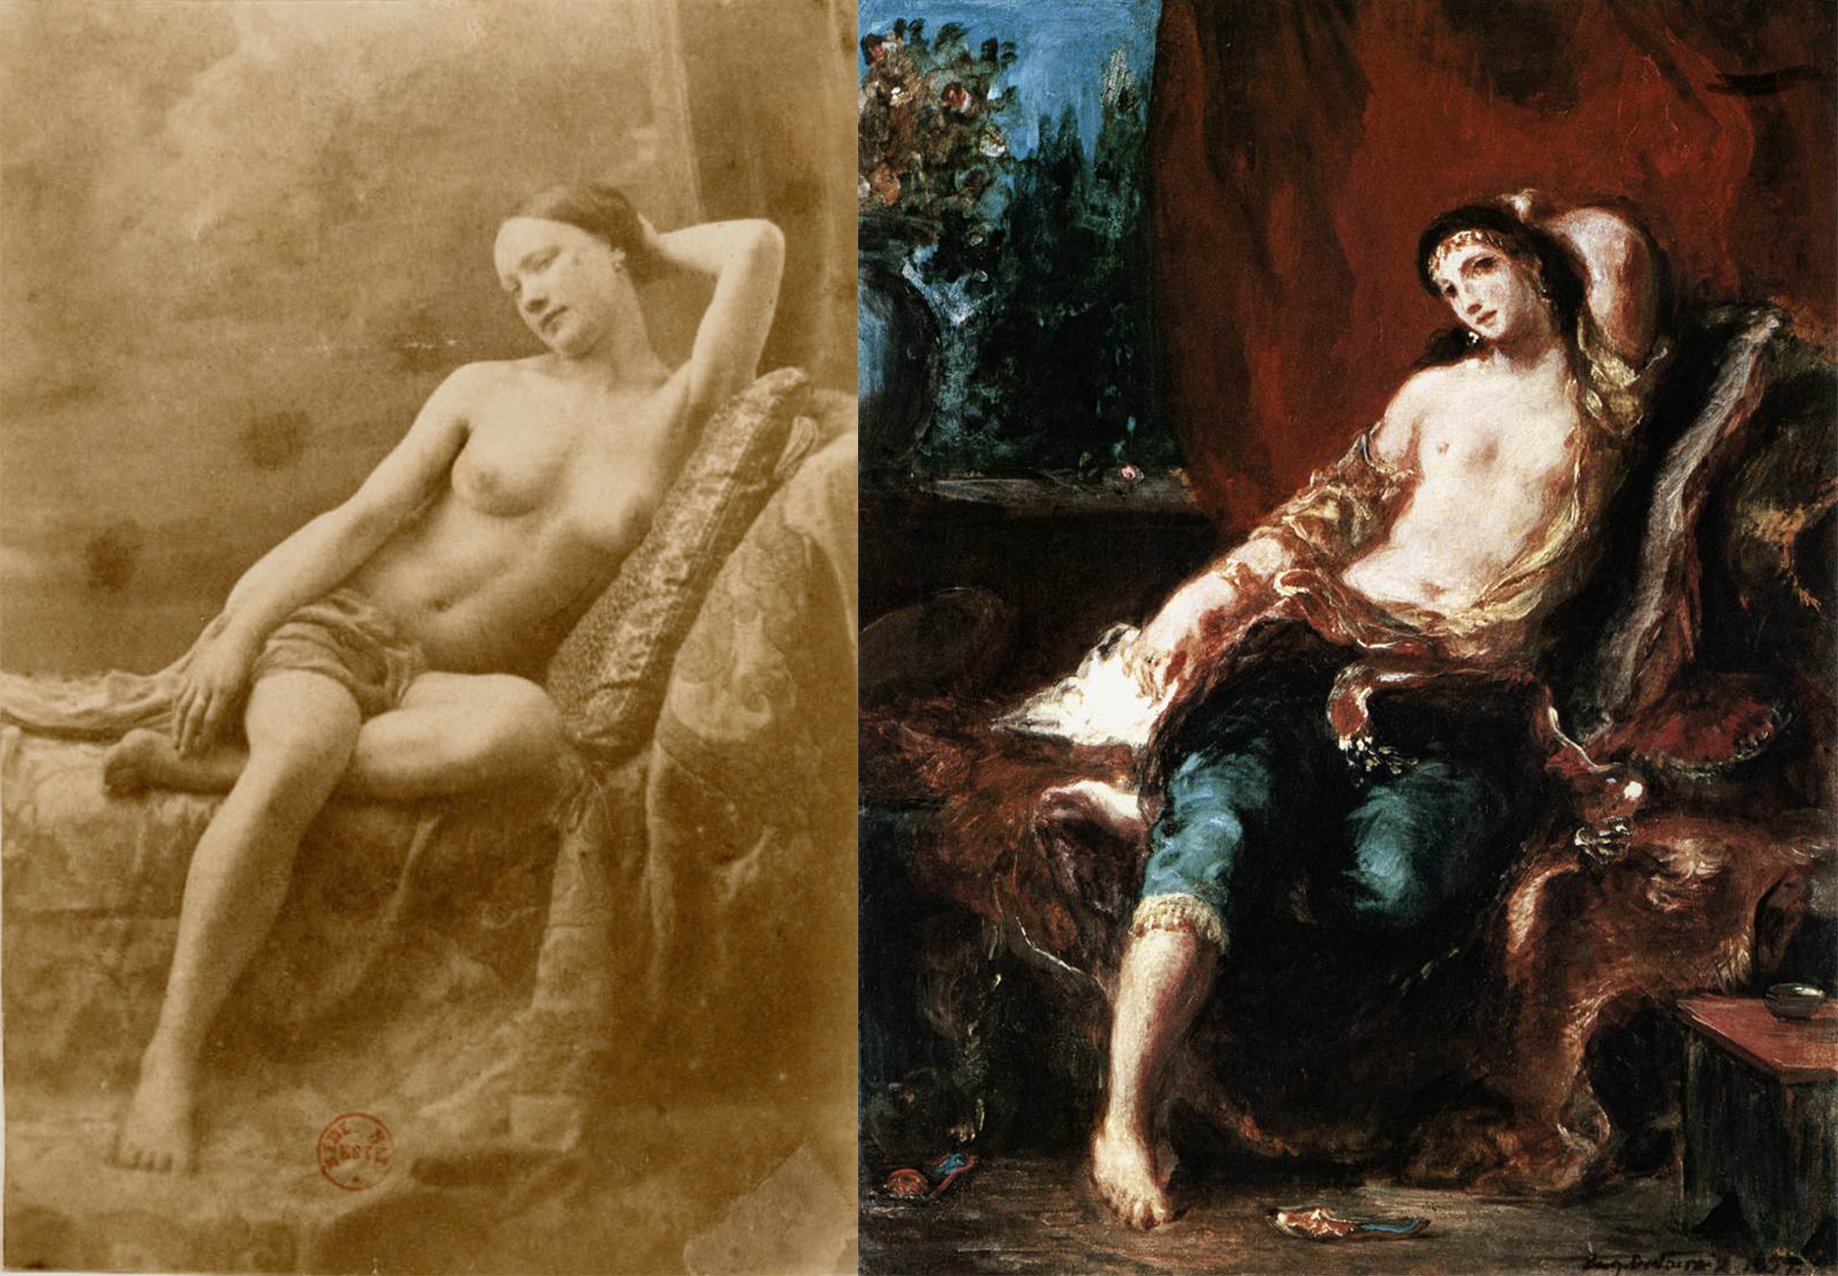 Odaliszk / Odaliszk by Eugène Durieu / Eugène Delacroix - 1833/1857 